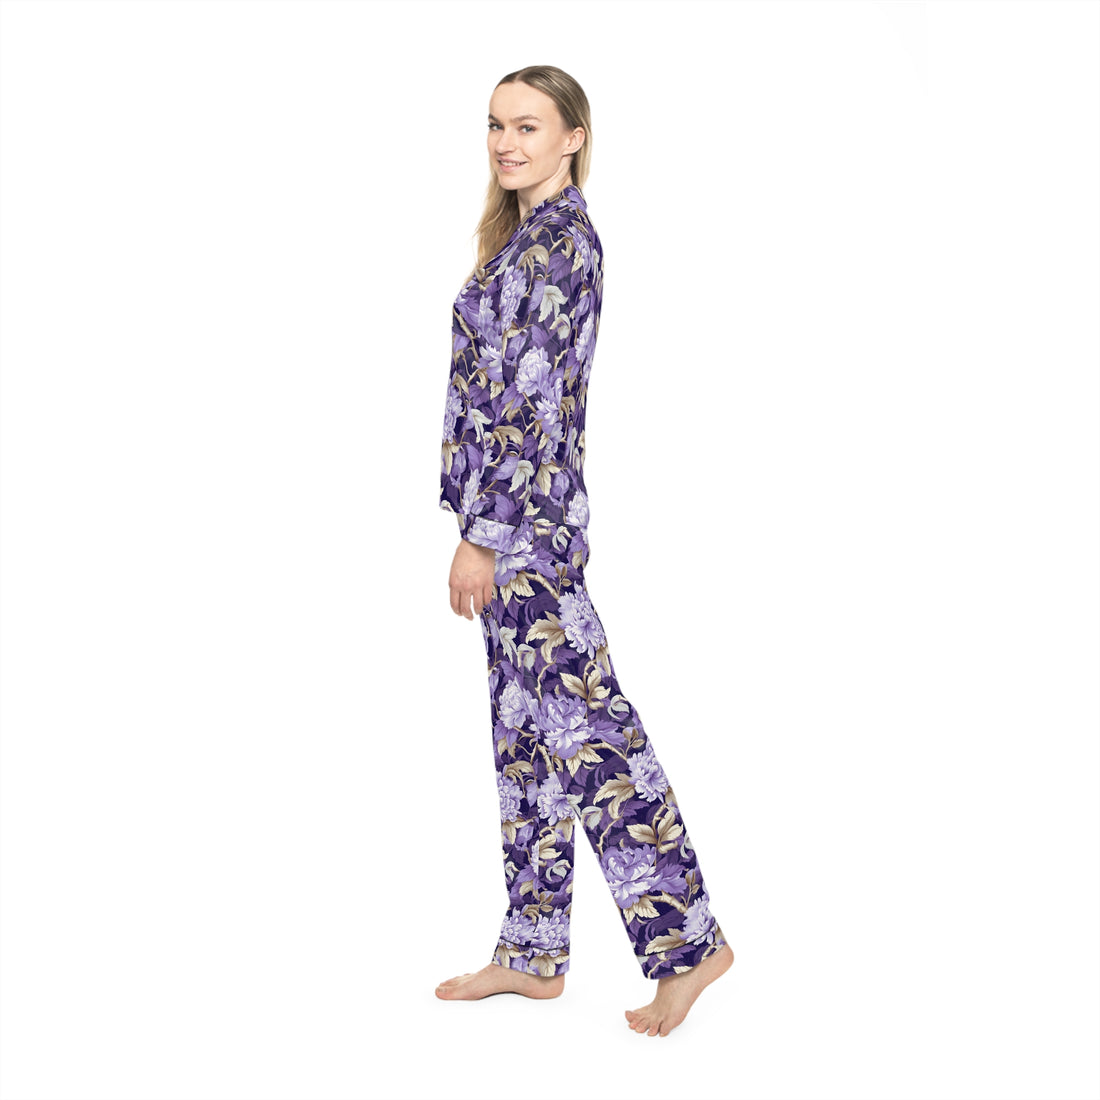 Lady Indigo Women's Luxury Satin Pajamas (AOP)